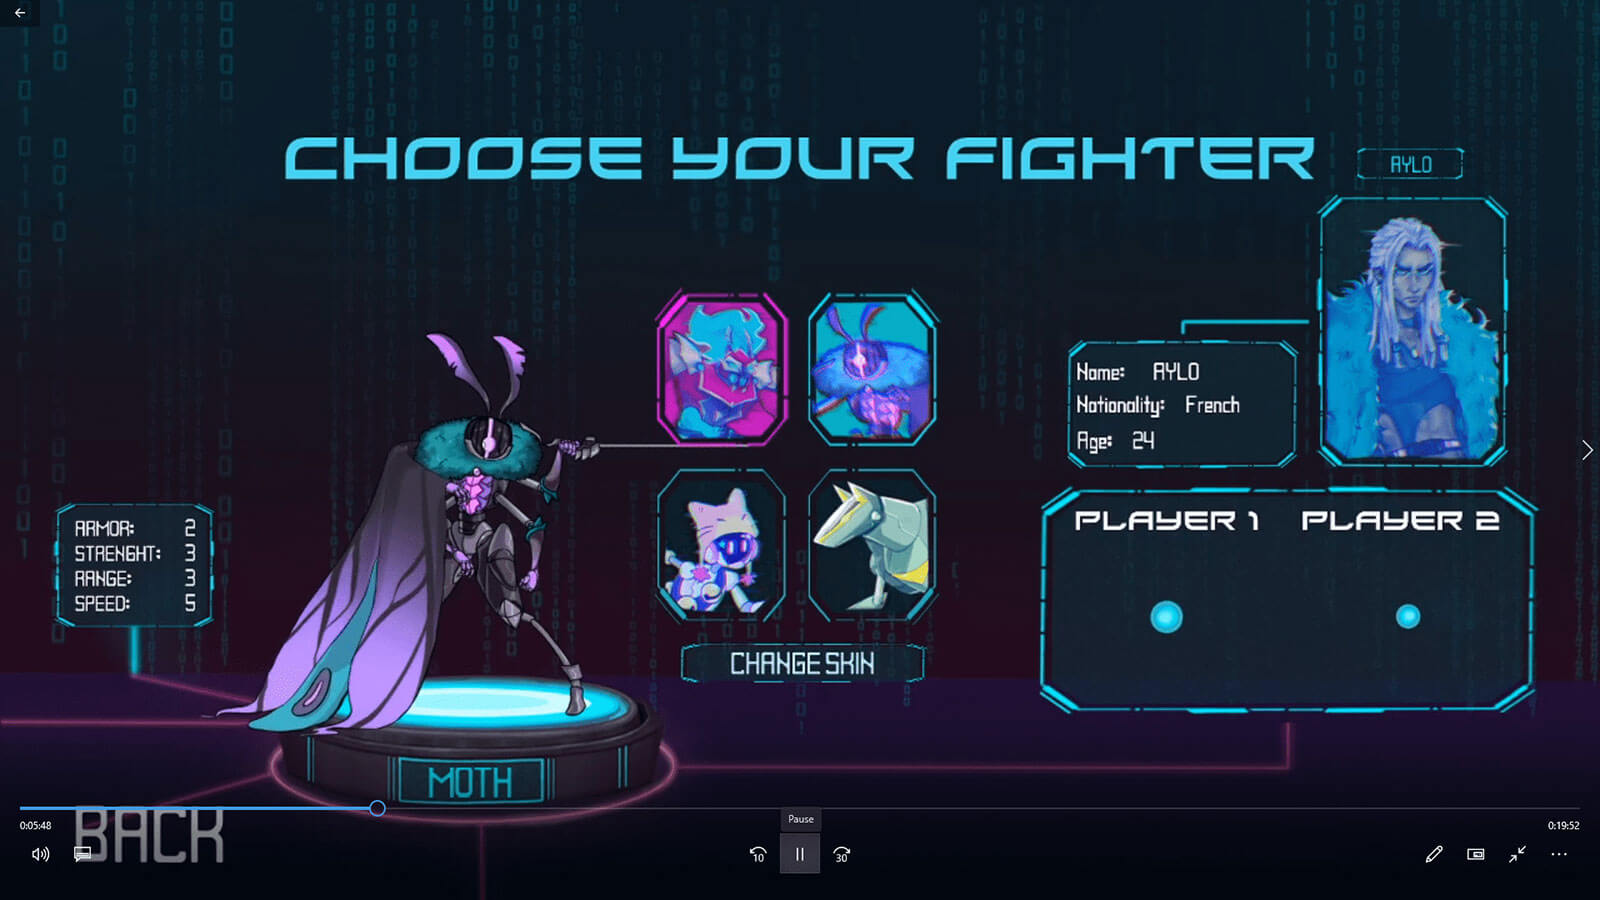 Pantalla para elegir jugador qué muestra un pódium con el jugador y sus características.